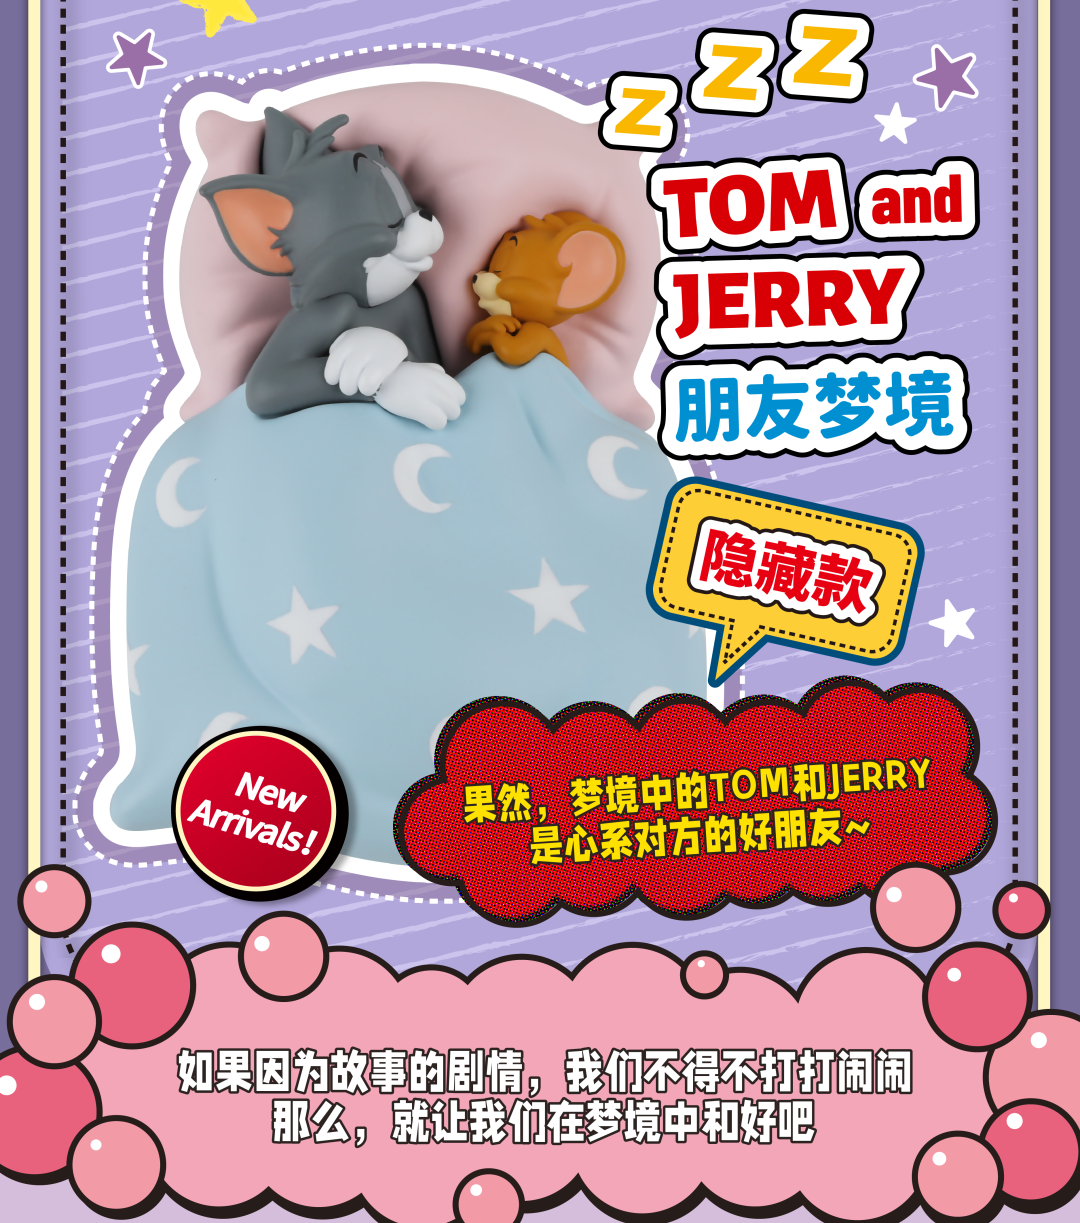 【Lemonade】預購-TOM &JERRY甜蜜夢境系列 盲盒 盒玩 盲抽 公仔 玩具 湯姆貓 傑利鼠 52TOYS